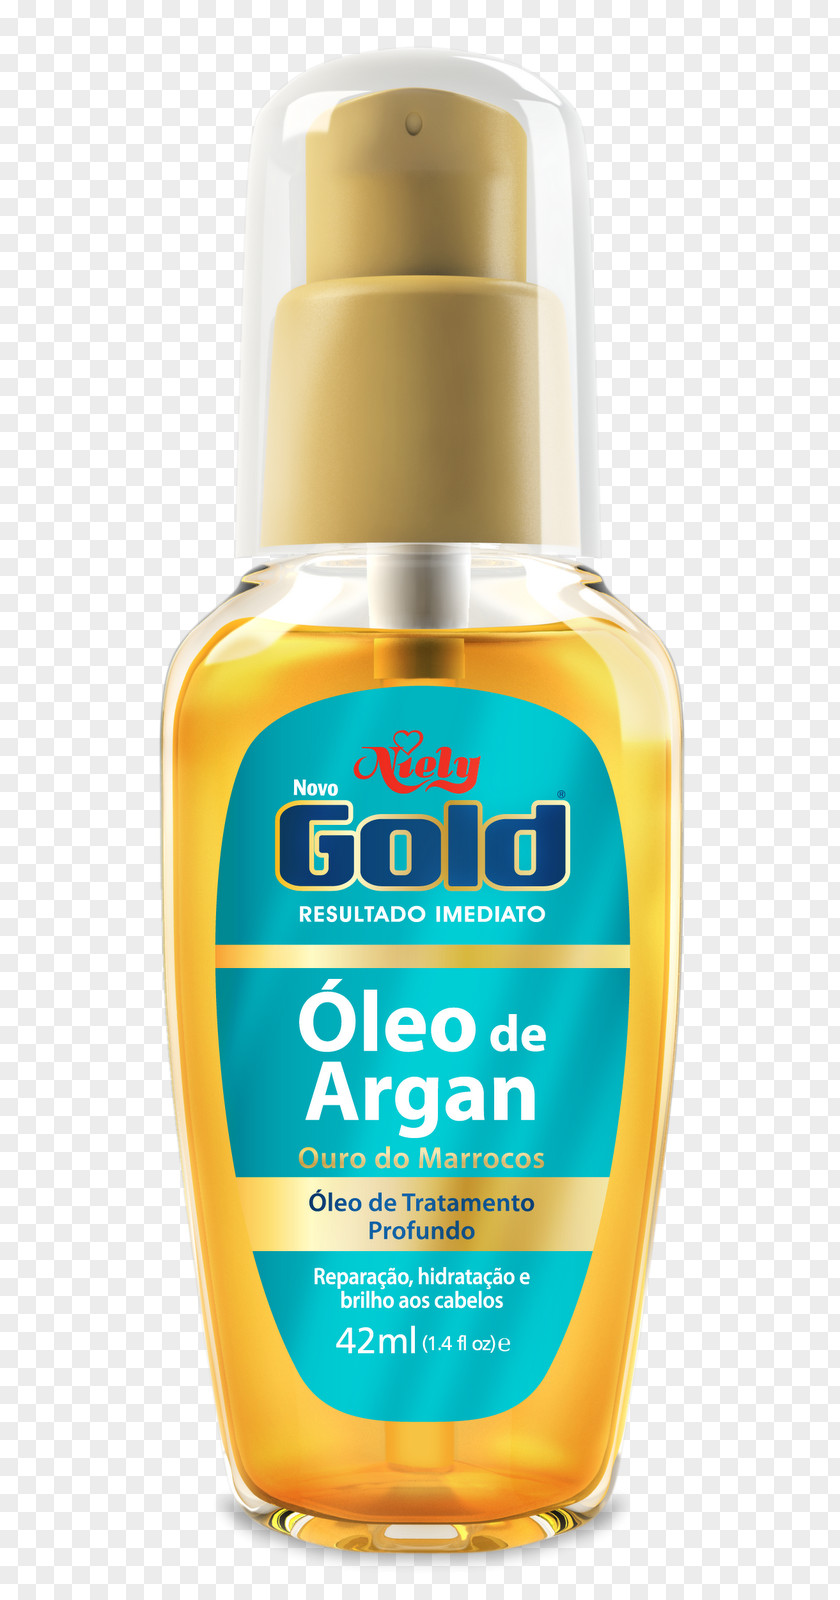 Argan Skin Care Product PNG